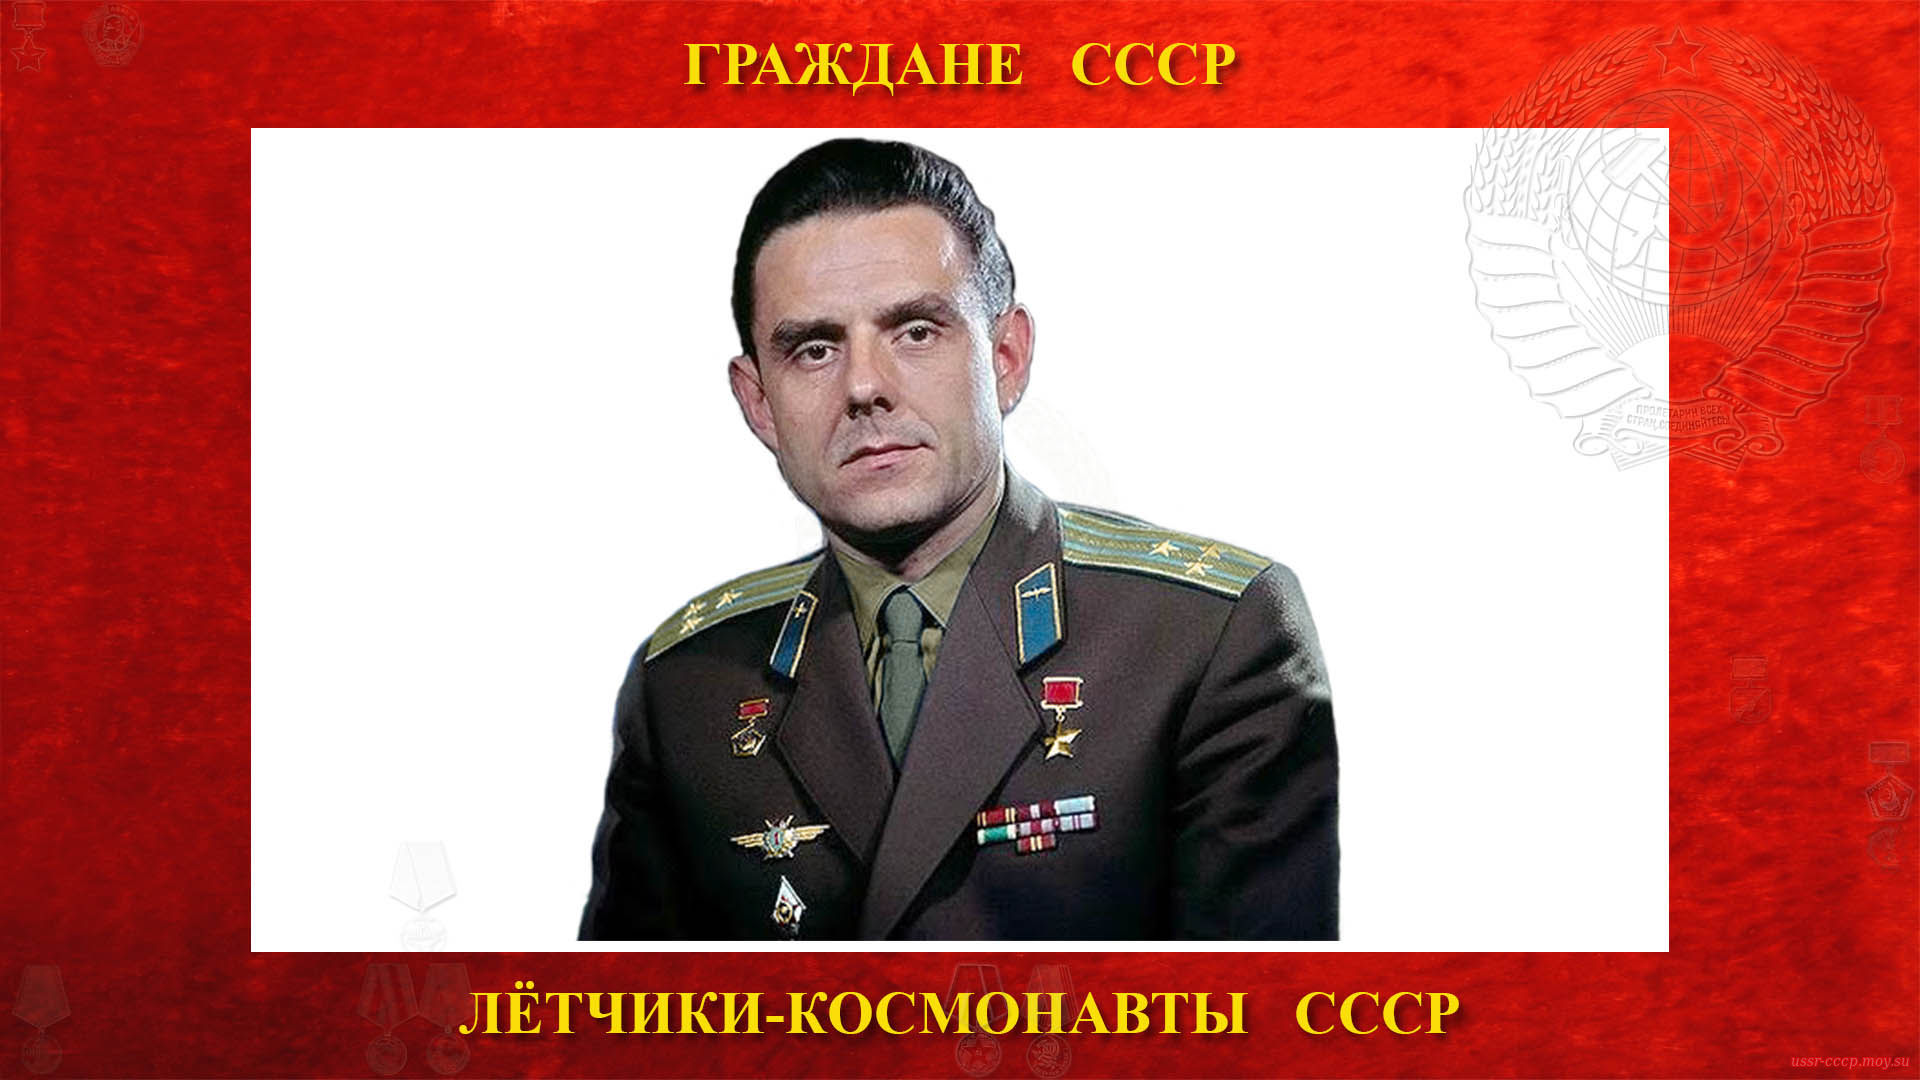 Комаров Владимир Михайлович (биография)